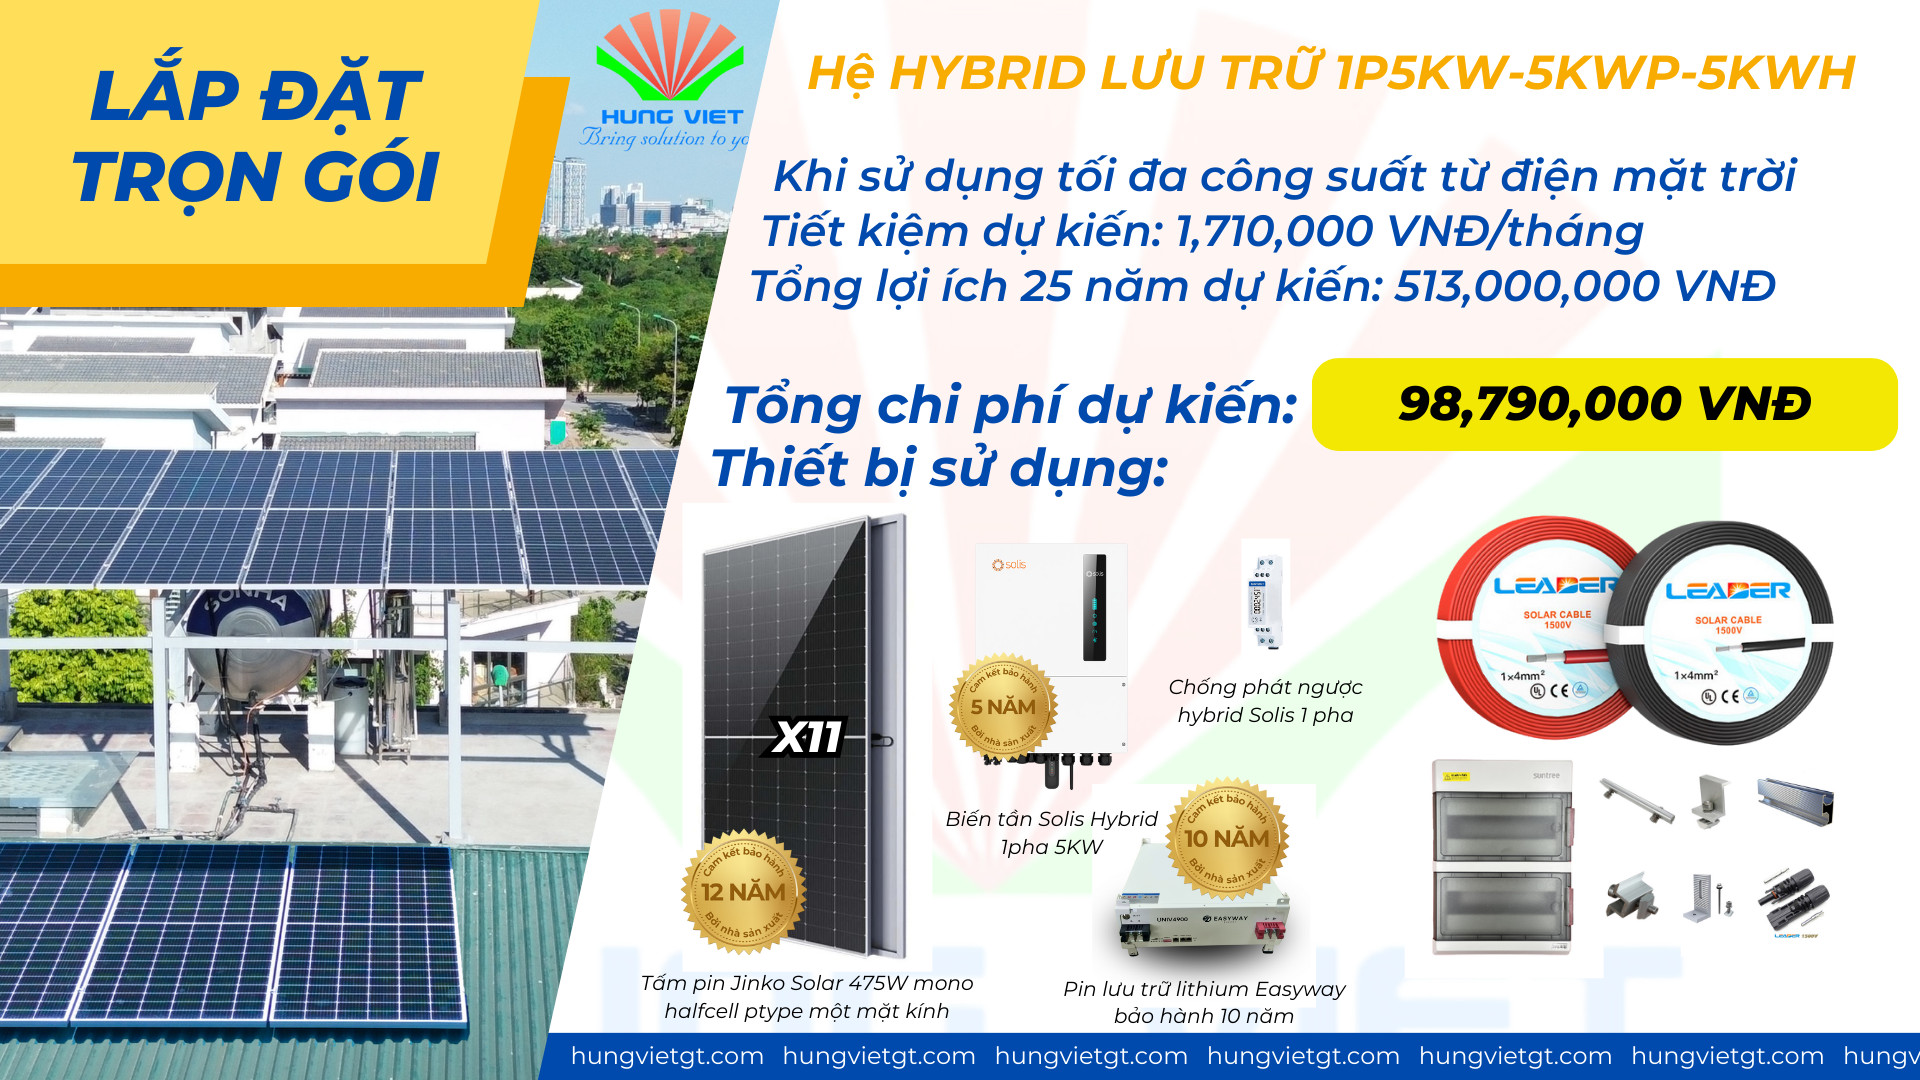 Combo lắp đặt trọn gói điện mặt trời hybrid 1P 5Kw lưu trữ 5kwh